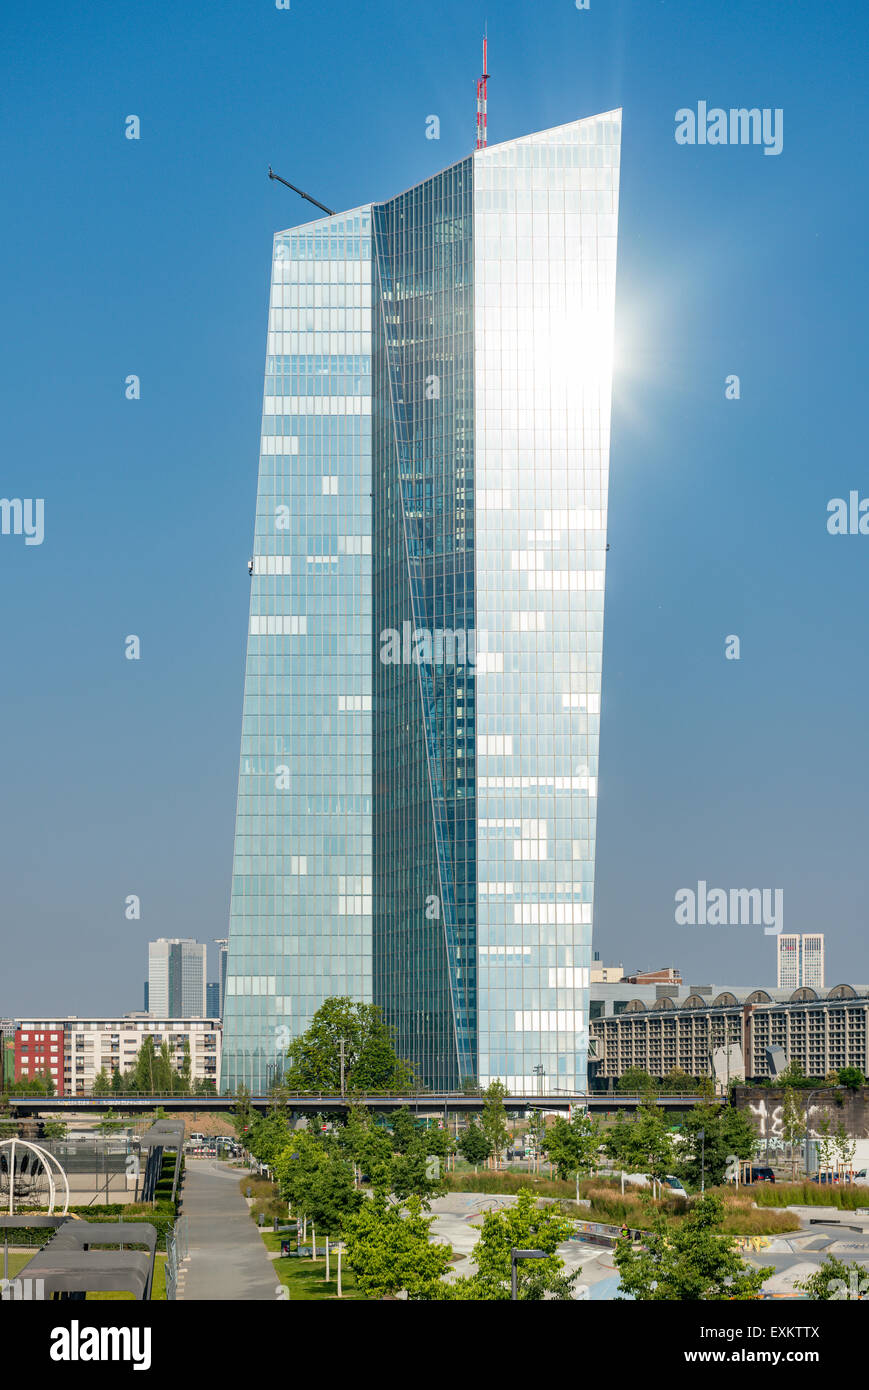 La nouvelle Banque centrale européenne, BCE, Frankfurt am Main, Hesse, Allemagne Banque D'Images